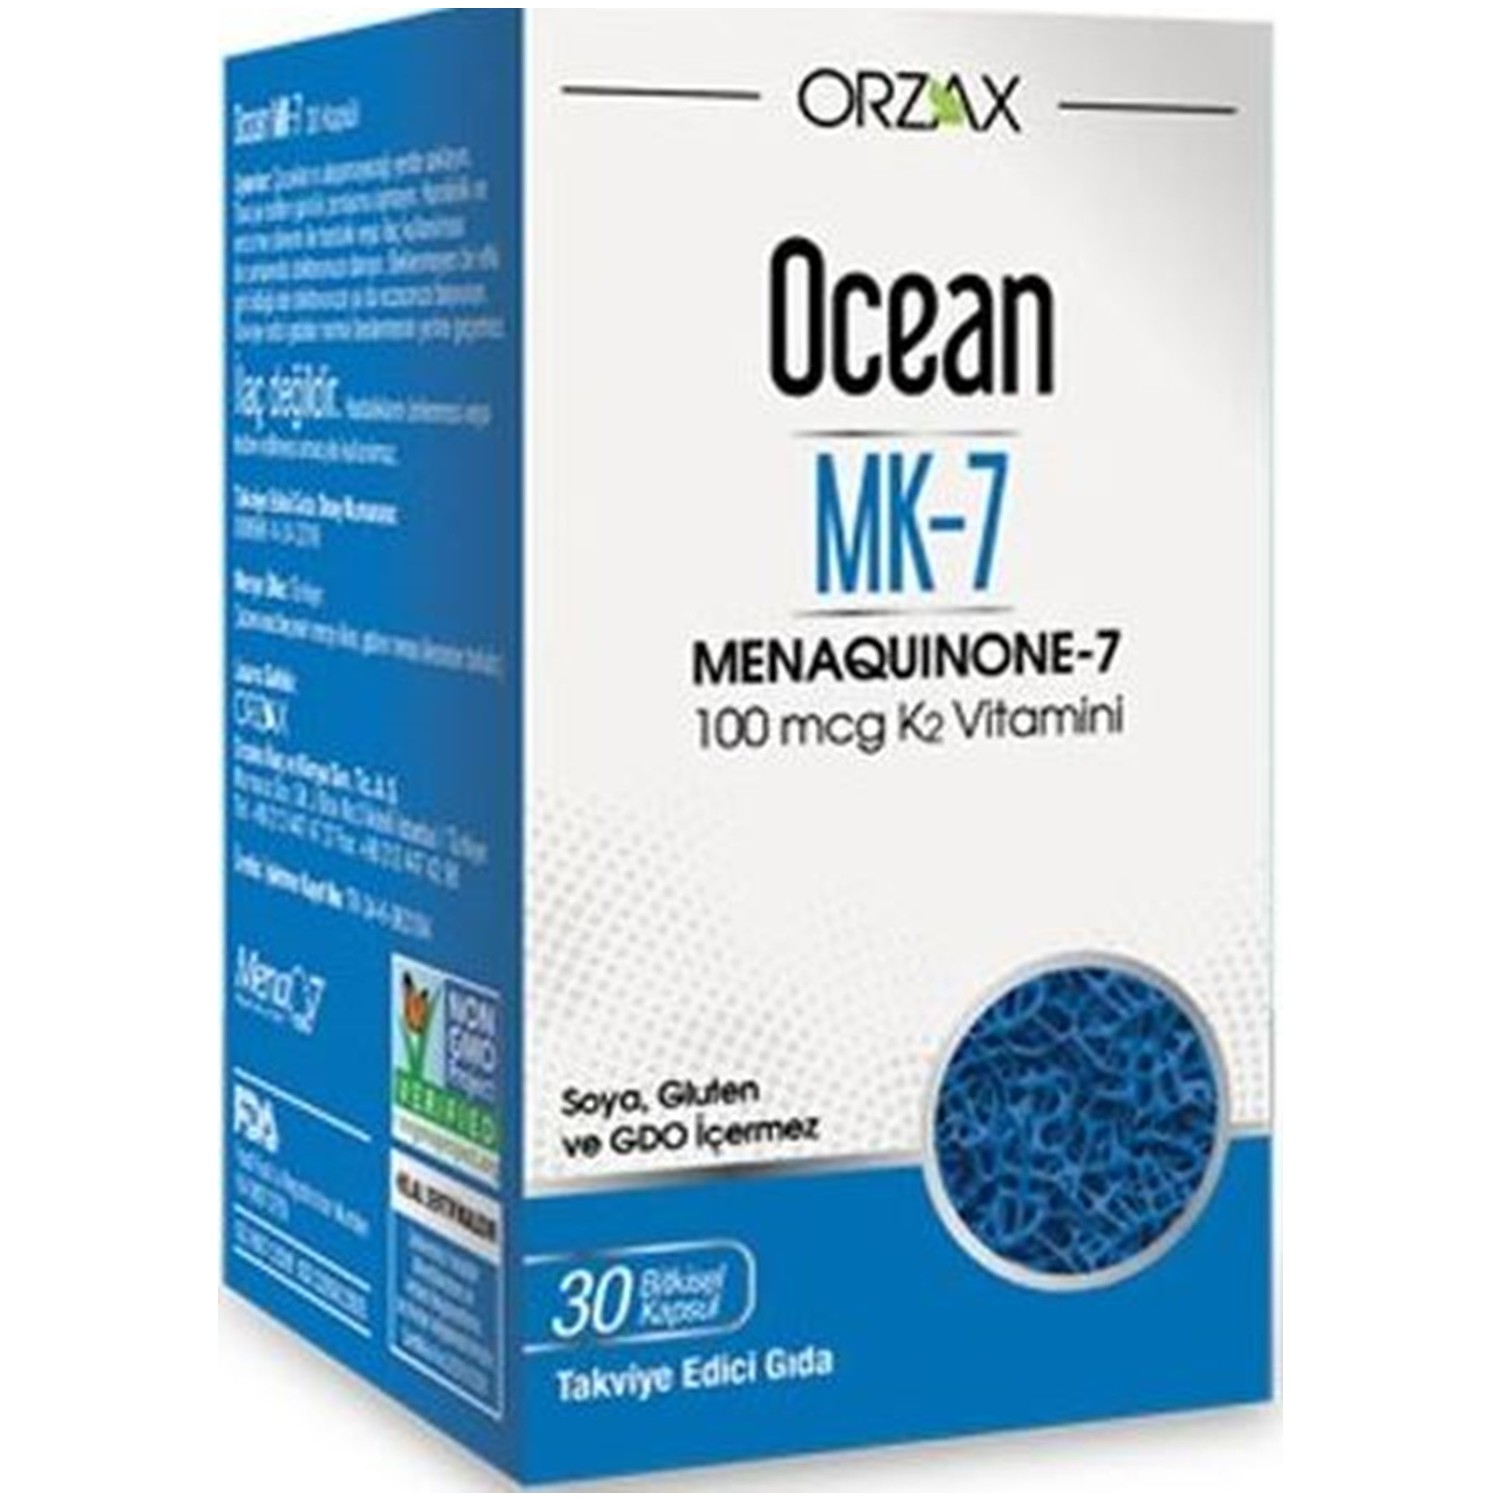 Пищевая добавка Orzax Ocean Mk-7 Vitamin К2 100 мкг, 30 капсул цена и фото